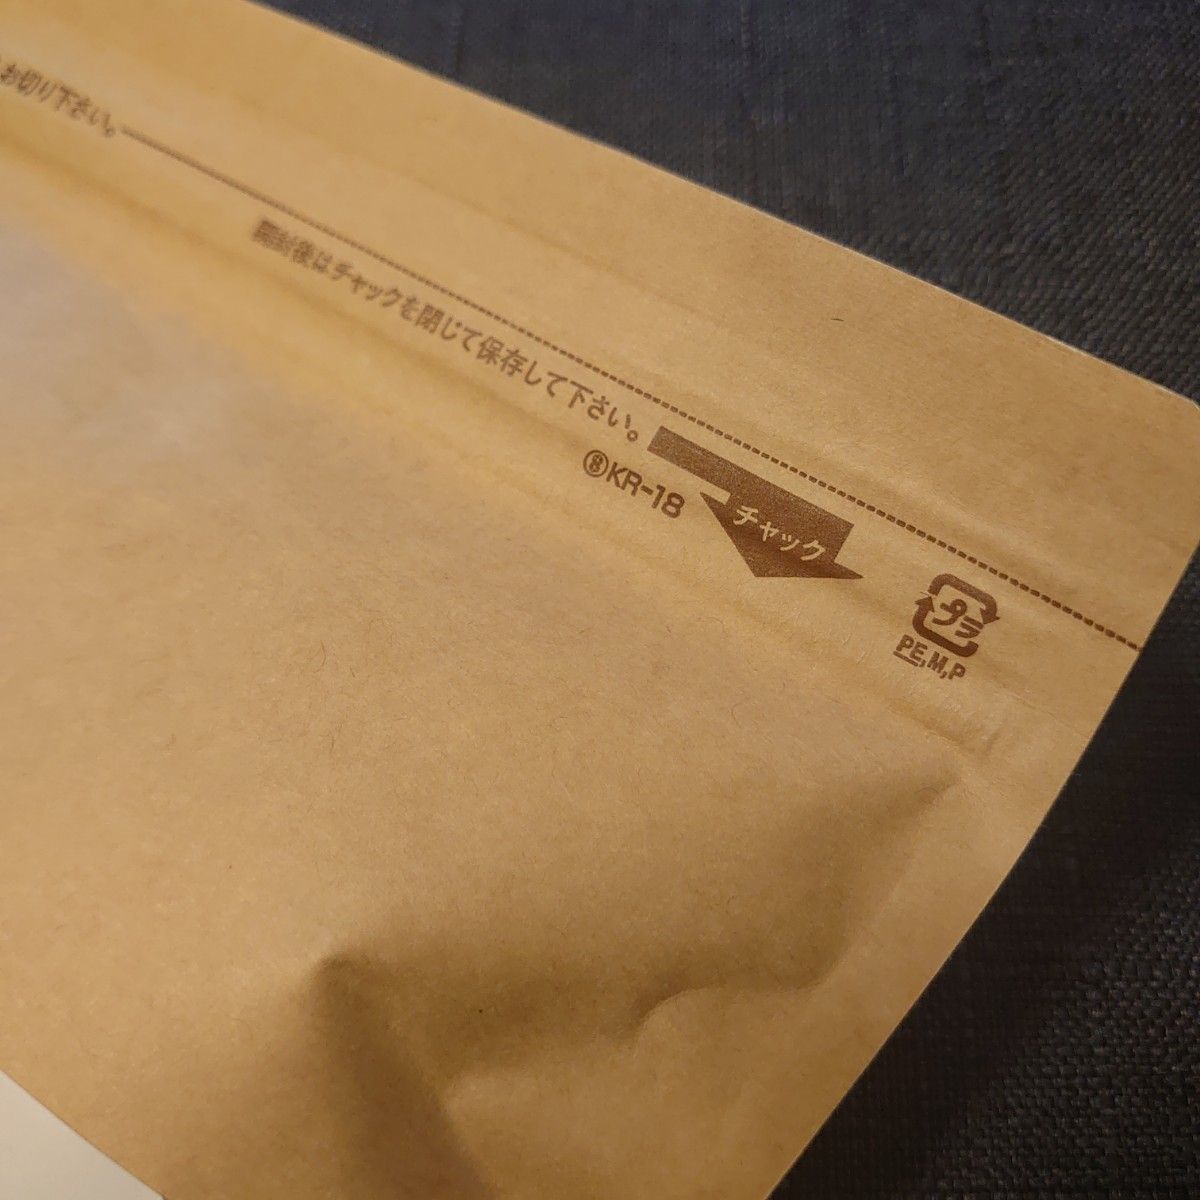 国内製造 ノンカフェイン 小豆ブレンド ハーブティ 2.0g×30包 無香料 無着色